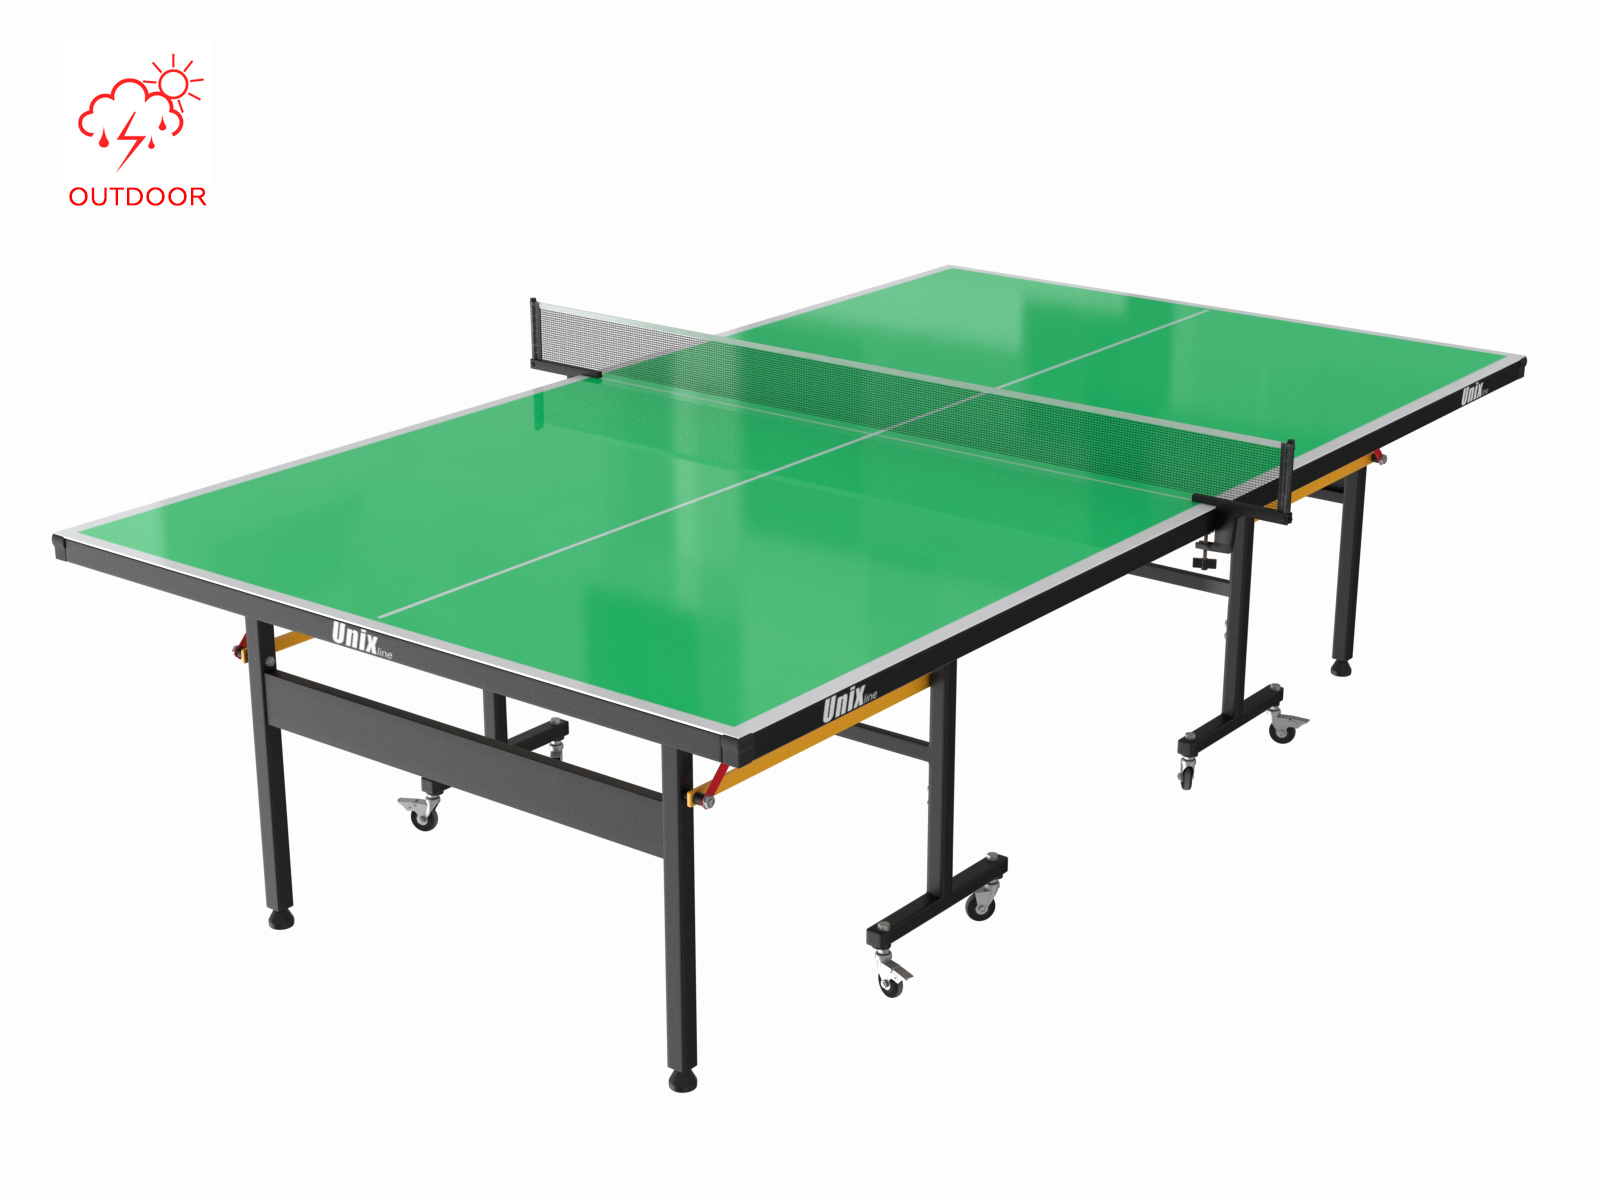 Всепогодный теннисный стол Unix line outdoor 6 mm (green)